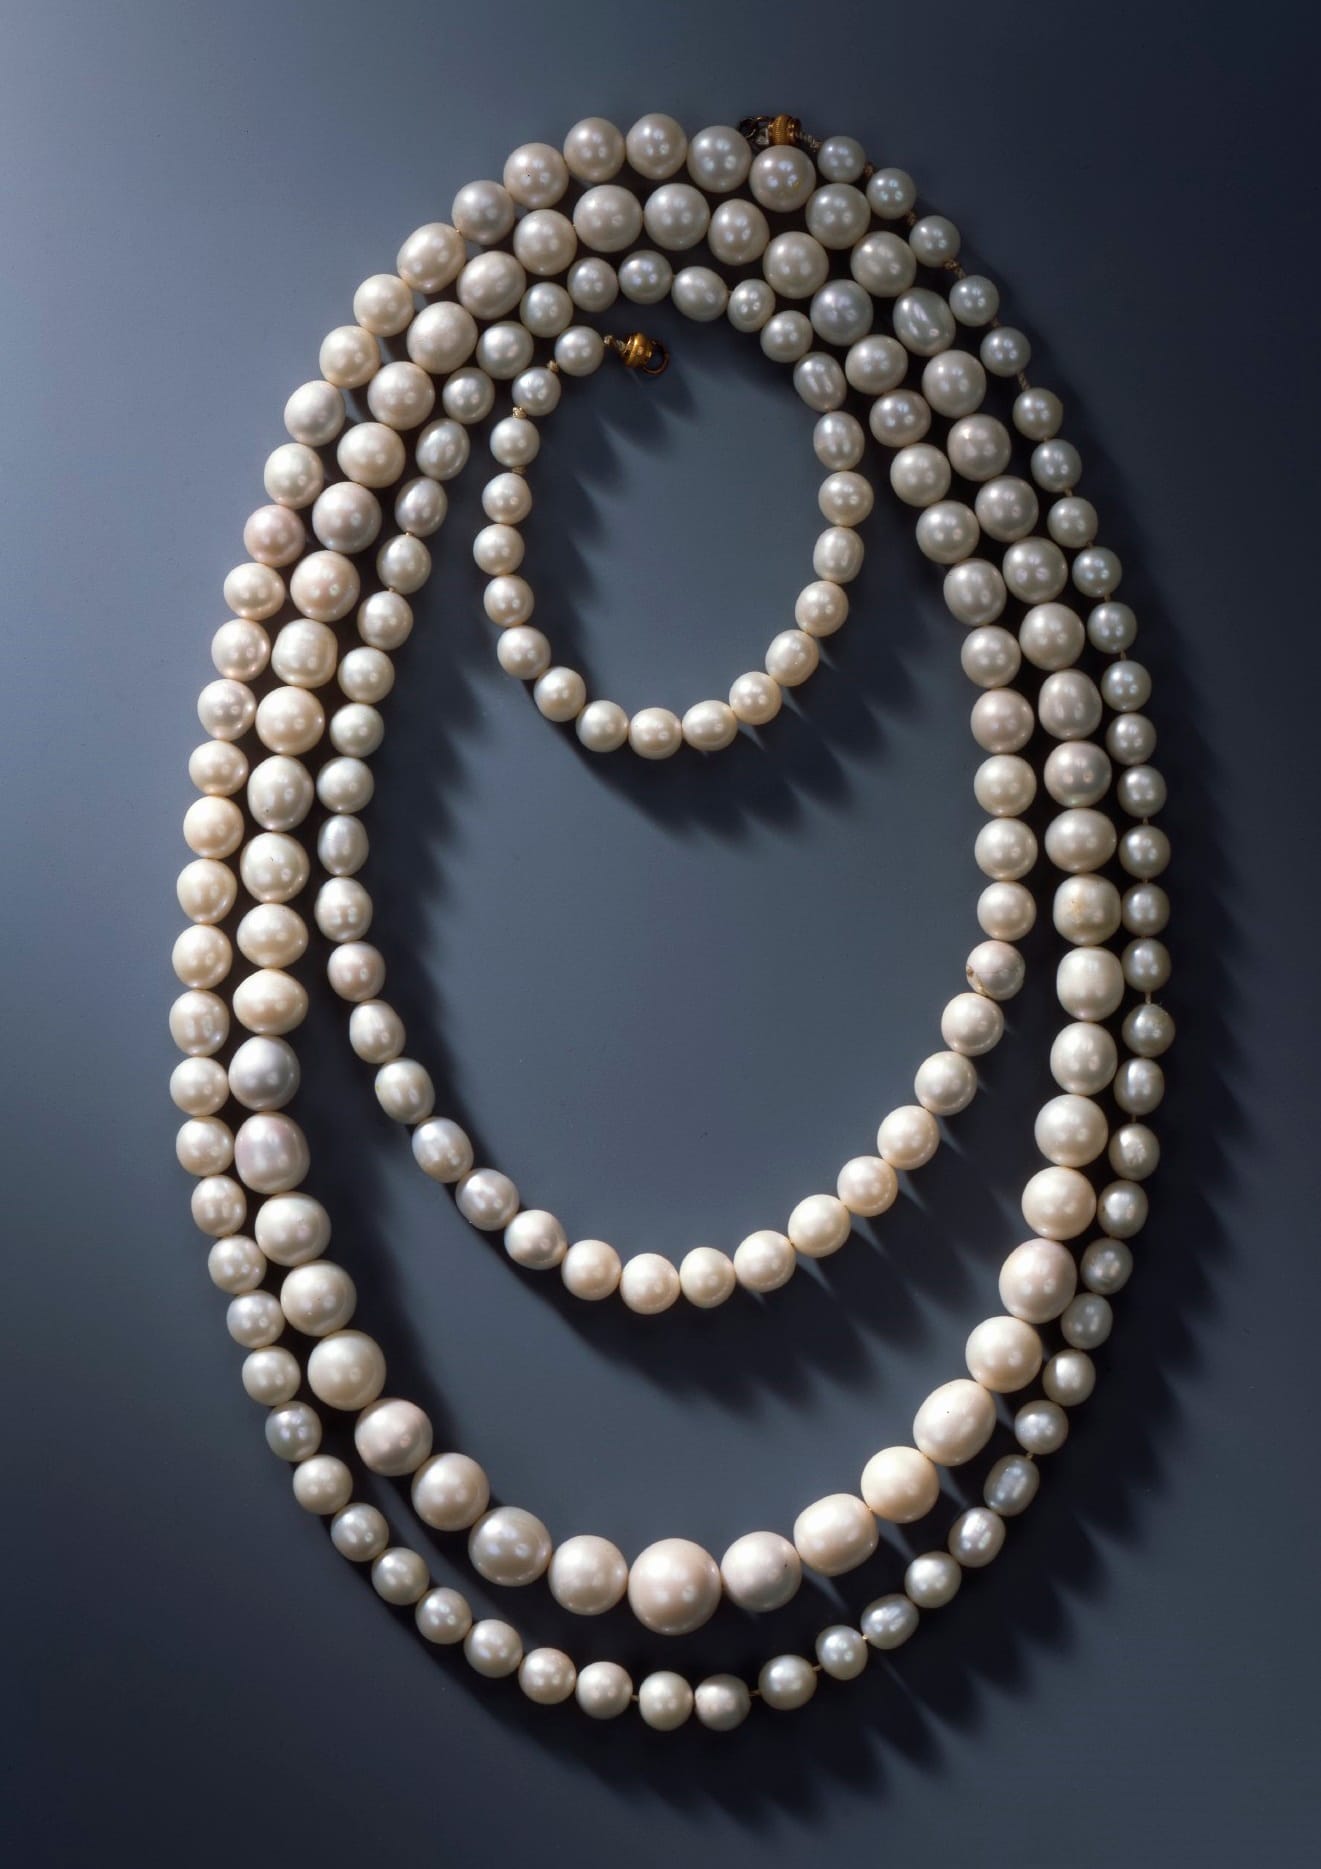 Juwelendiebstahl in Dresden: Diese Kette besteht aus 177 sächsischen Perlen, die vor 1734 aus den vogtländischen Gewässern gewonnen und zwischen 1927 und 1937 zur Kette aufgereiht wurden.